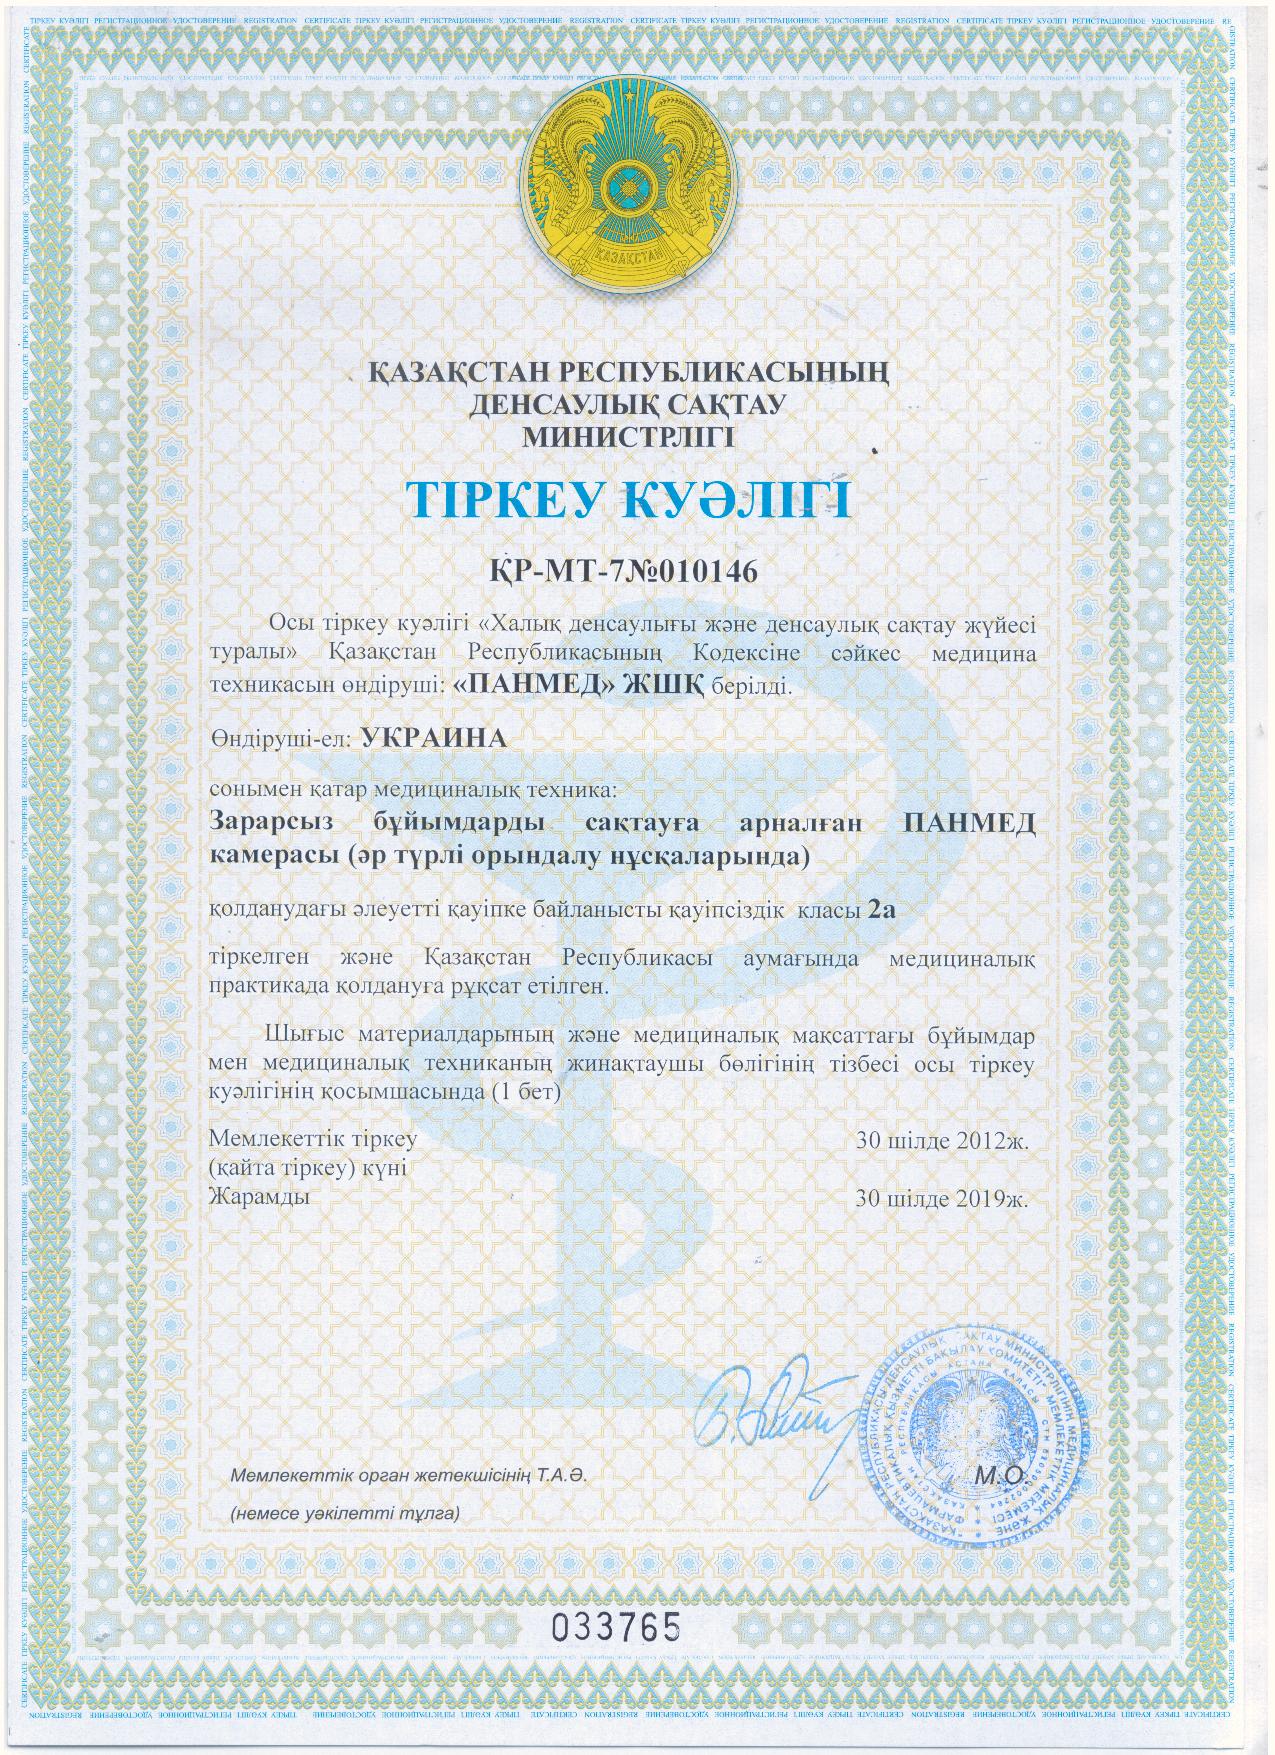 Реєстраційне посвідчення Міністерства охорони здоров’я Республіки Казахстан